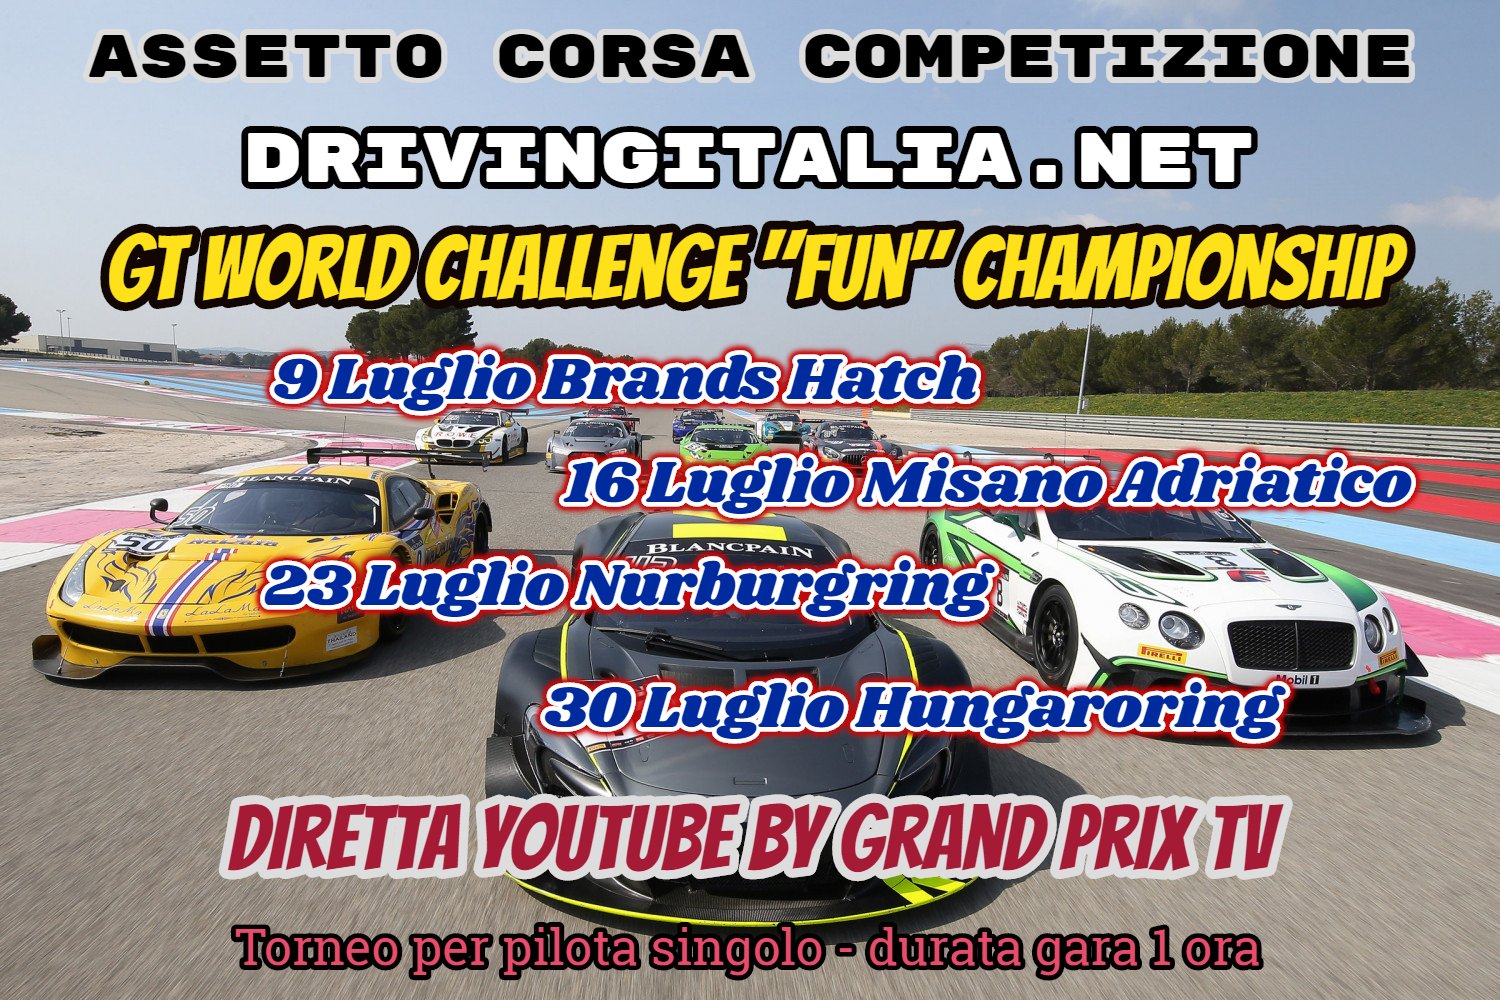 More information about "AC Competizione: GT World Challenge - ultimi 7 posti disponibili!"